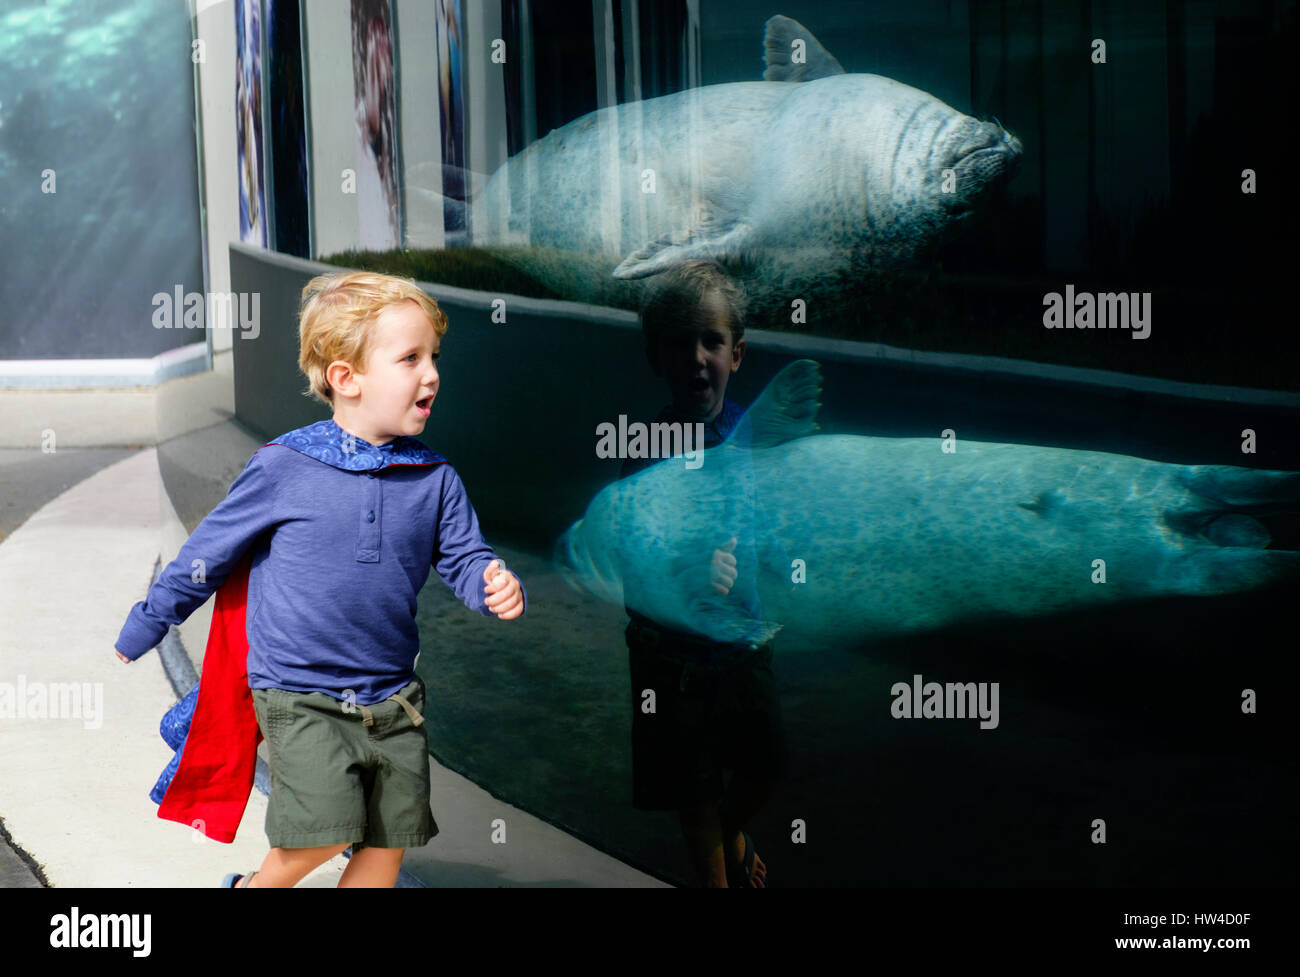 Kaukasische junge im Aquarium in der Nähe von Robben schwimmen laufen Stockfoto